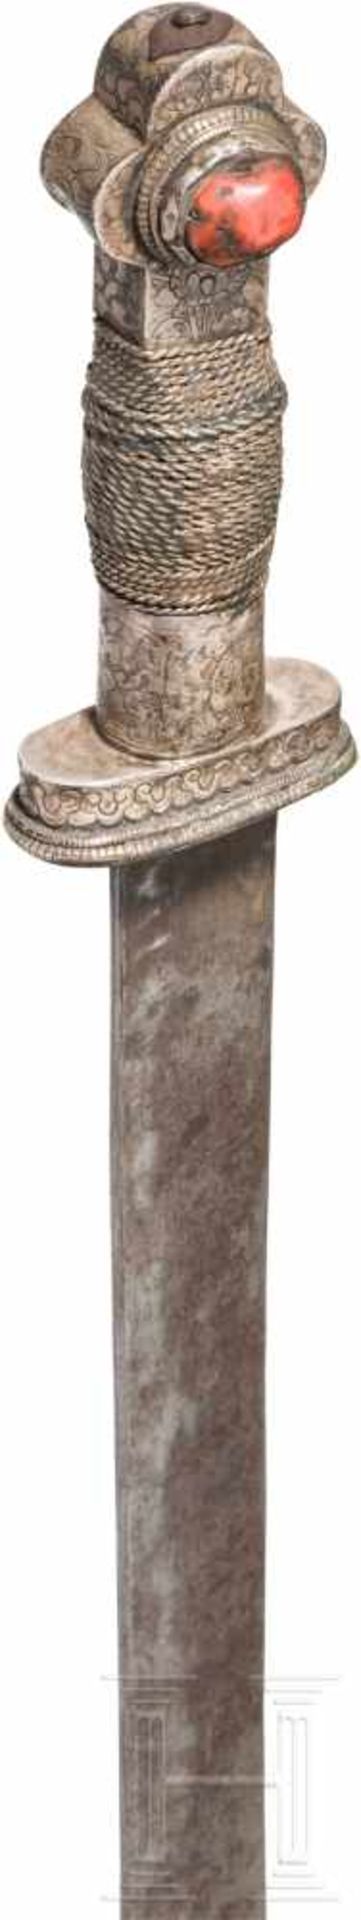 Silbermontiertes, korallen- und türkisbesetztes Schwert, Tibet, 18./19. Jhdt.Lange, etwas fleckige - Bild 3 aus 5